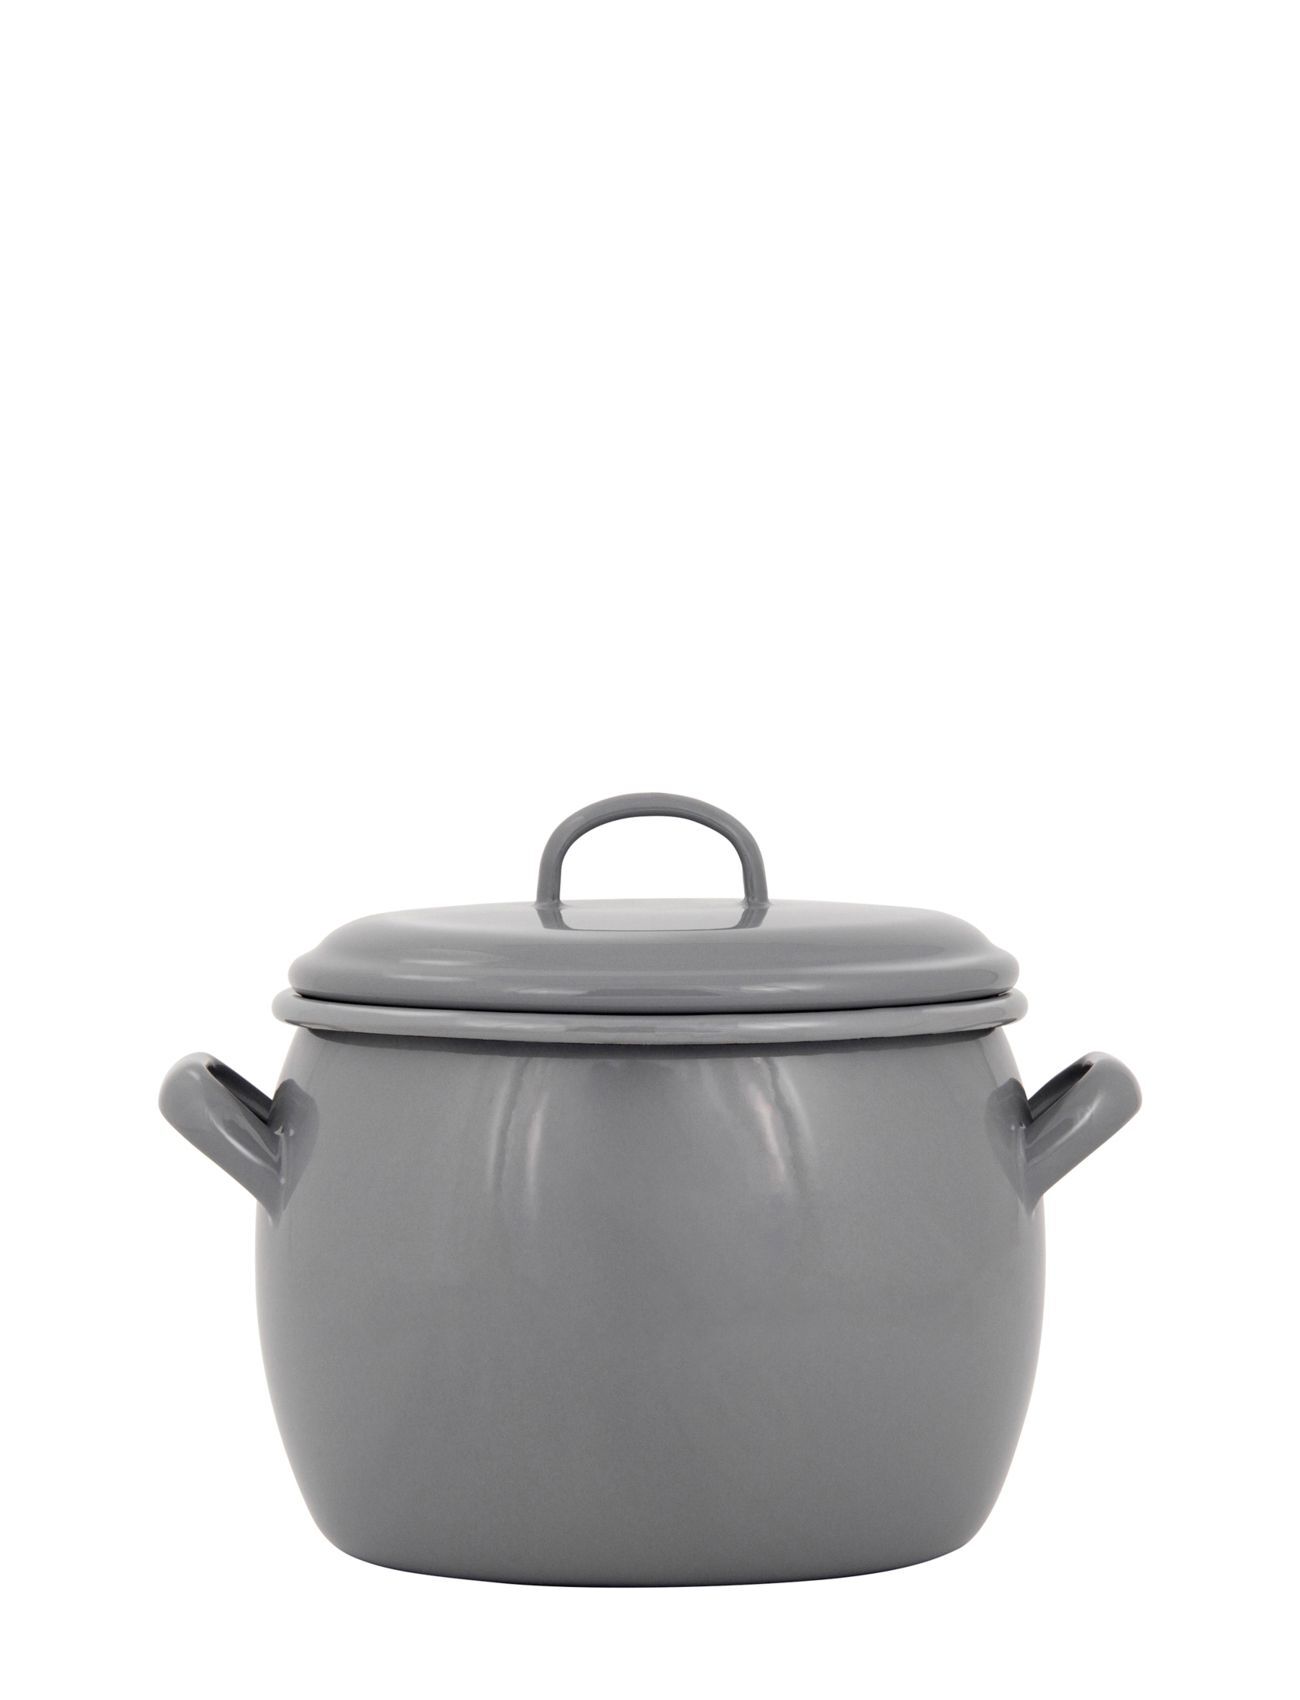 Kockums Jernverk Bellied Pot With Lid, 4L Home Kitchen Pots & Pans Saucepans Grå Kockums Jernverk